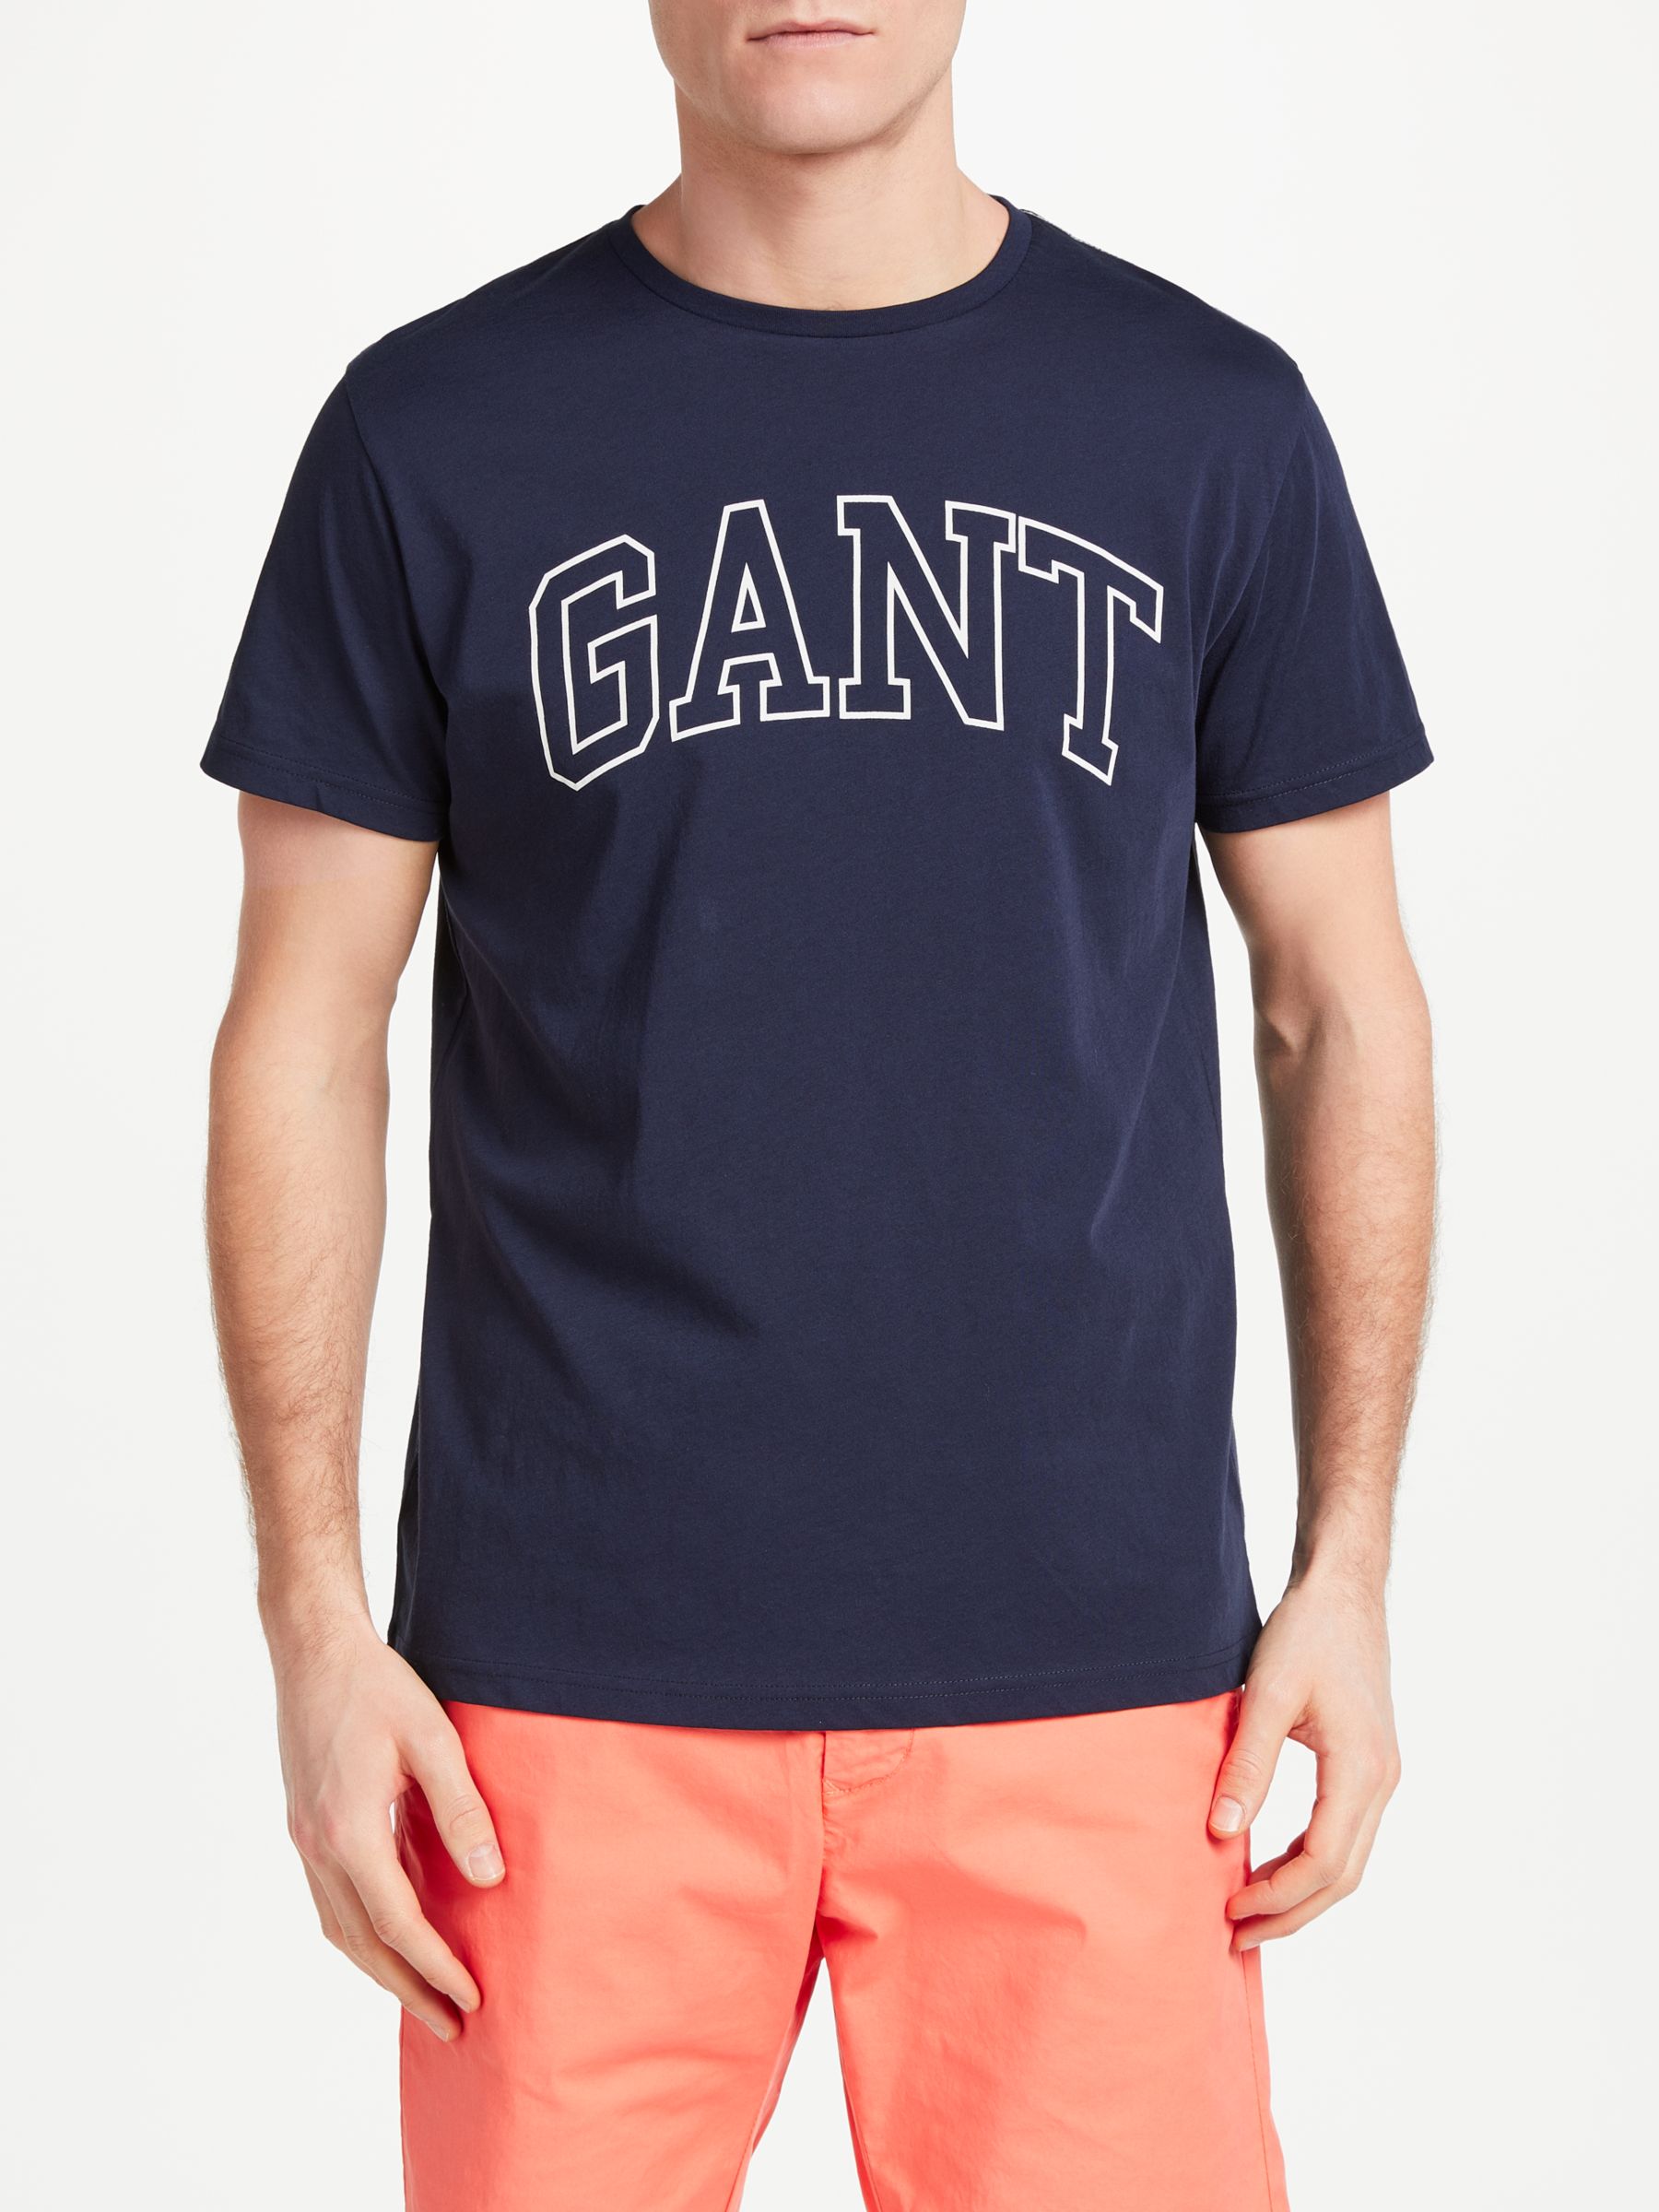 Gant Outline Print Cotton T-Shirt, Navy, L